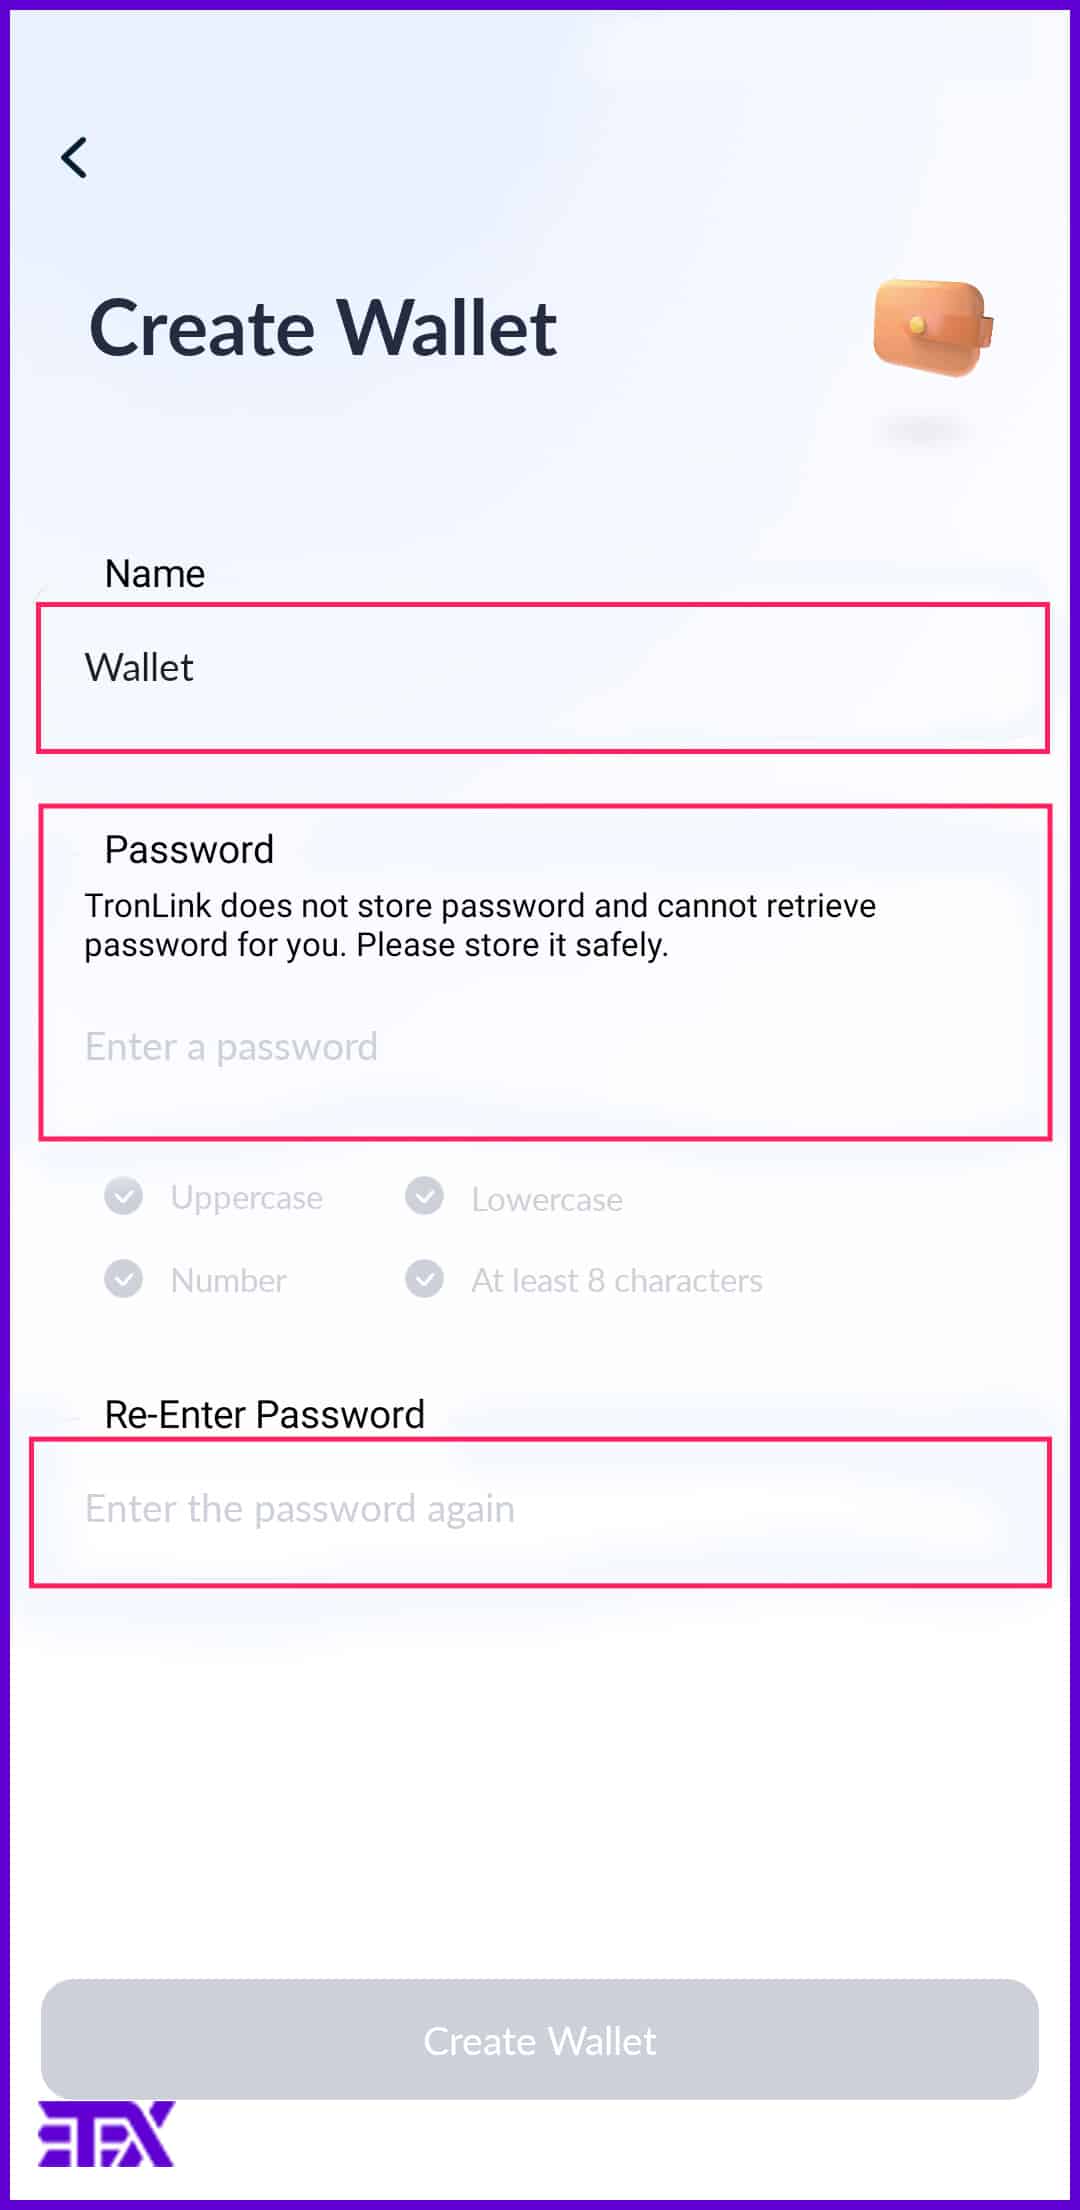 انتخاب نام و رمز عبور قوی برای ولت ترون لینک.